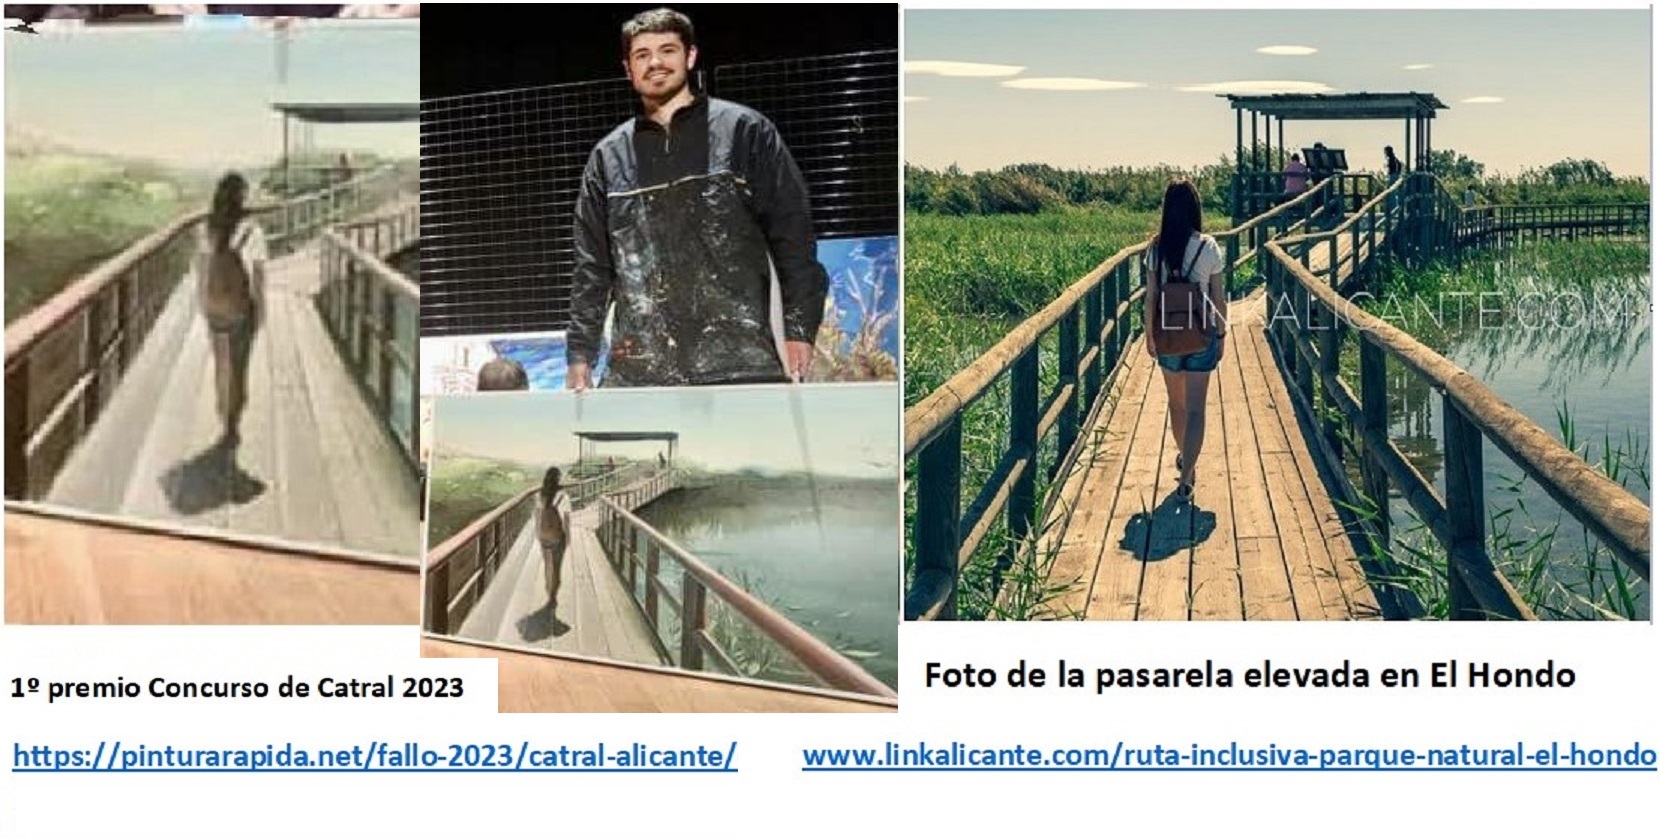 1º premio Certamen de Catral 2023   ///   Foto de la pasarela elevada en El Hondo  